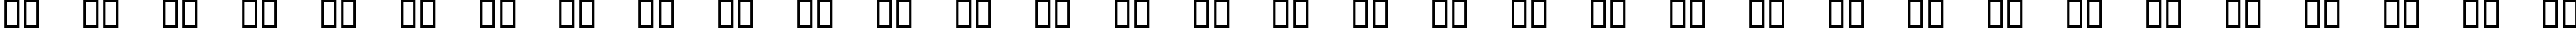 Пример написания русского алфавита шрифтом Lucida Arrows